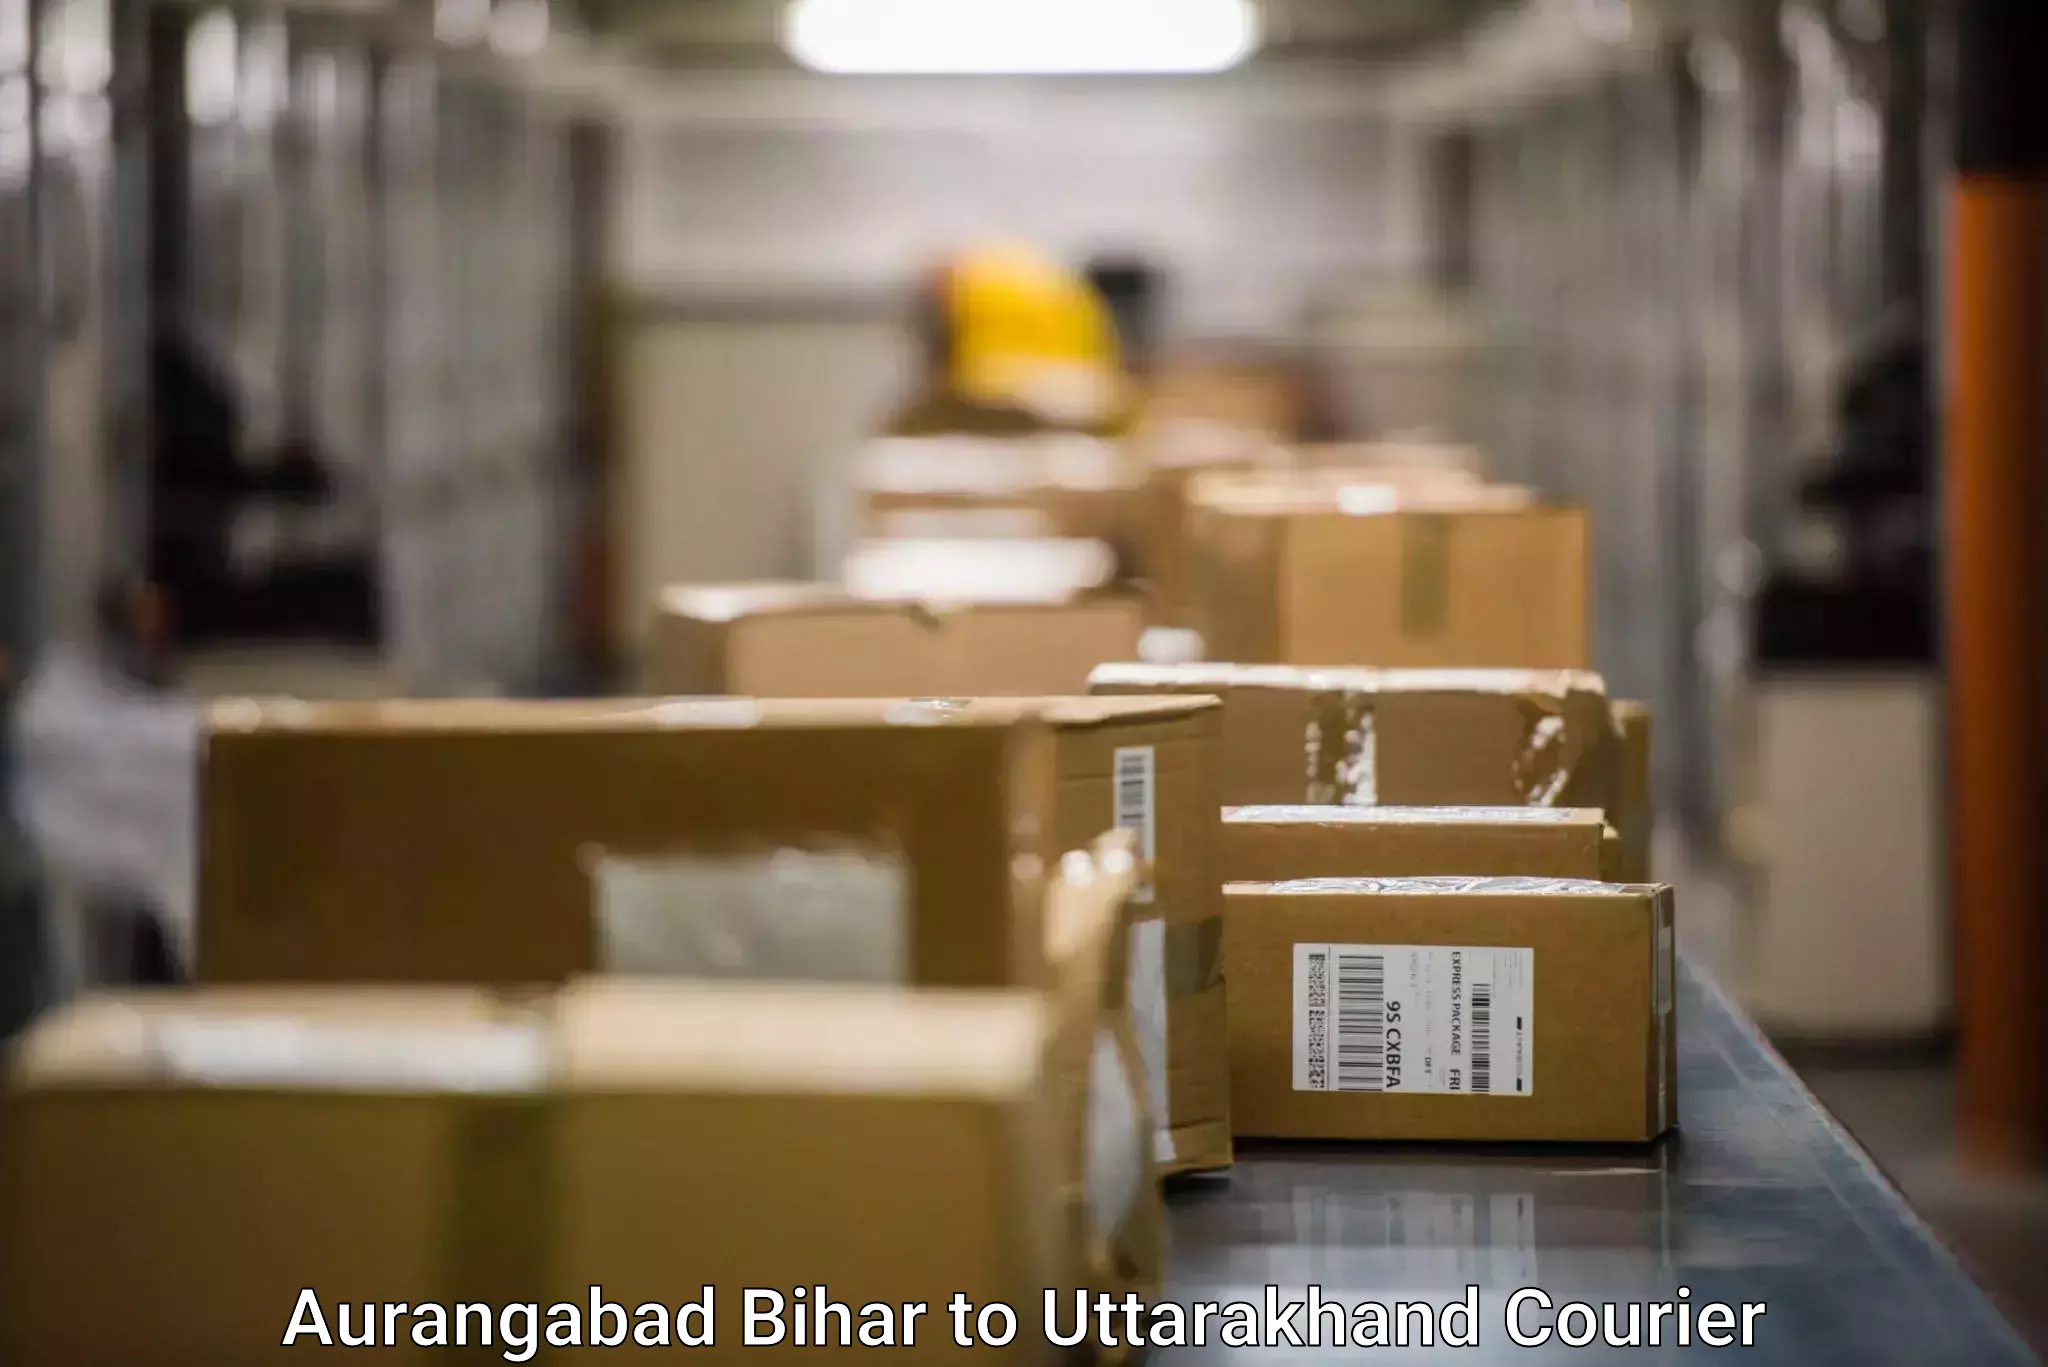 Doorstep delivery service Aurangabad Bihar to Laksar